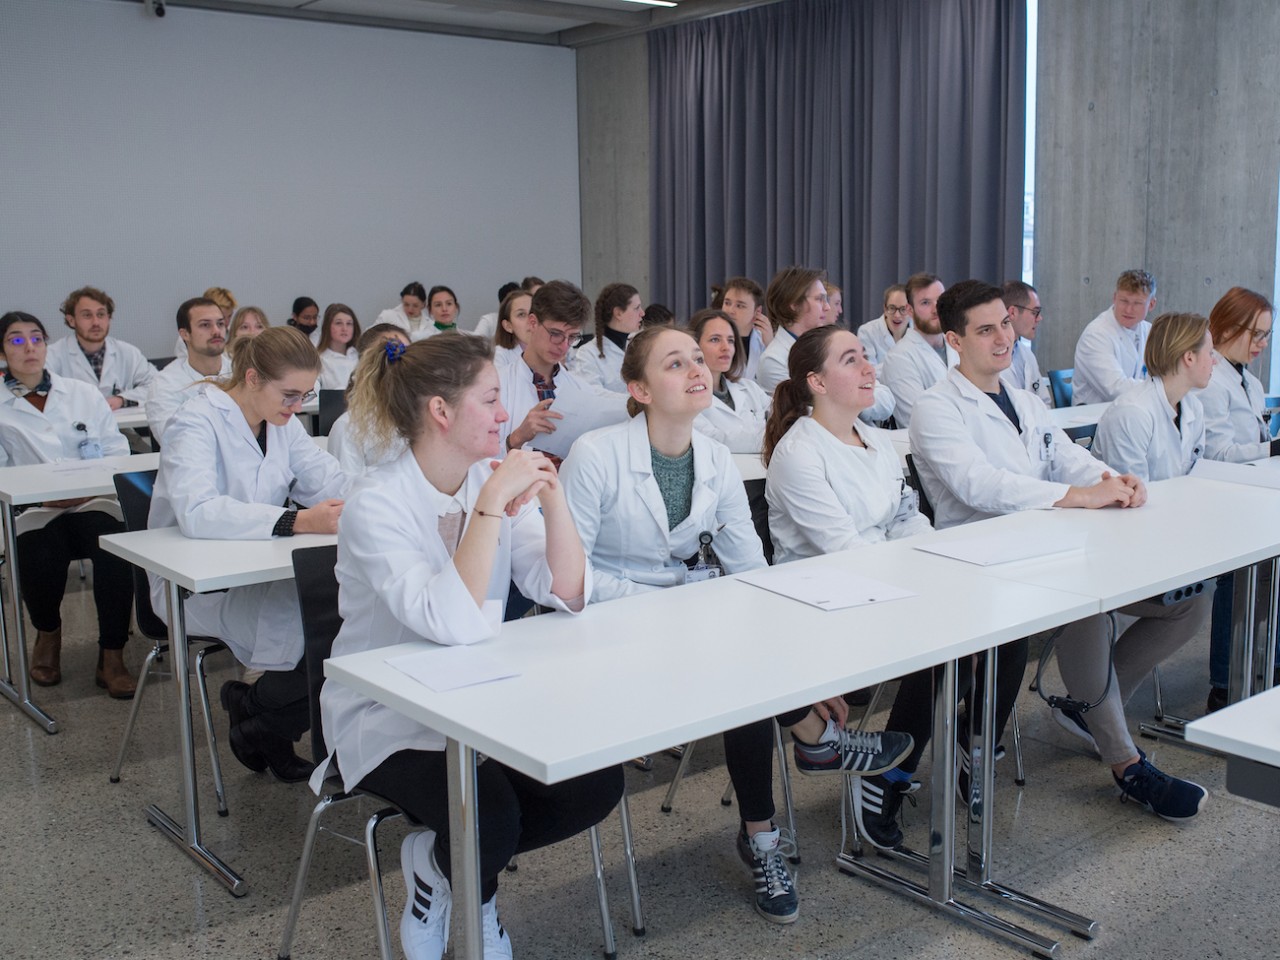 Studenti del Master in medicina durante una simulazione dell’esame federale OSCE nel marzo scorso (foto di Alfio Tommasini)